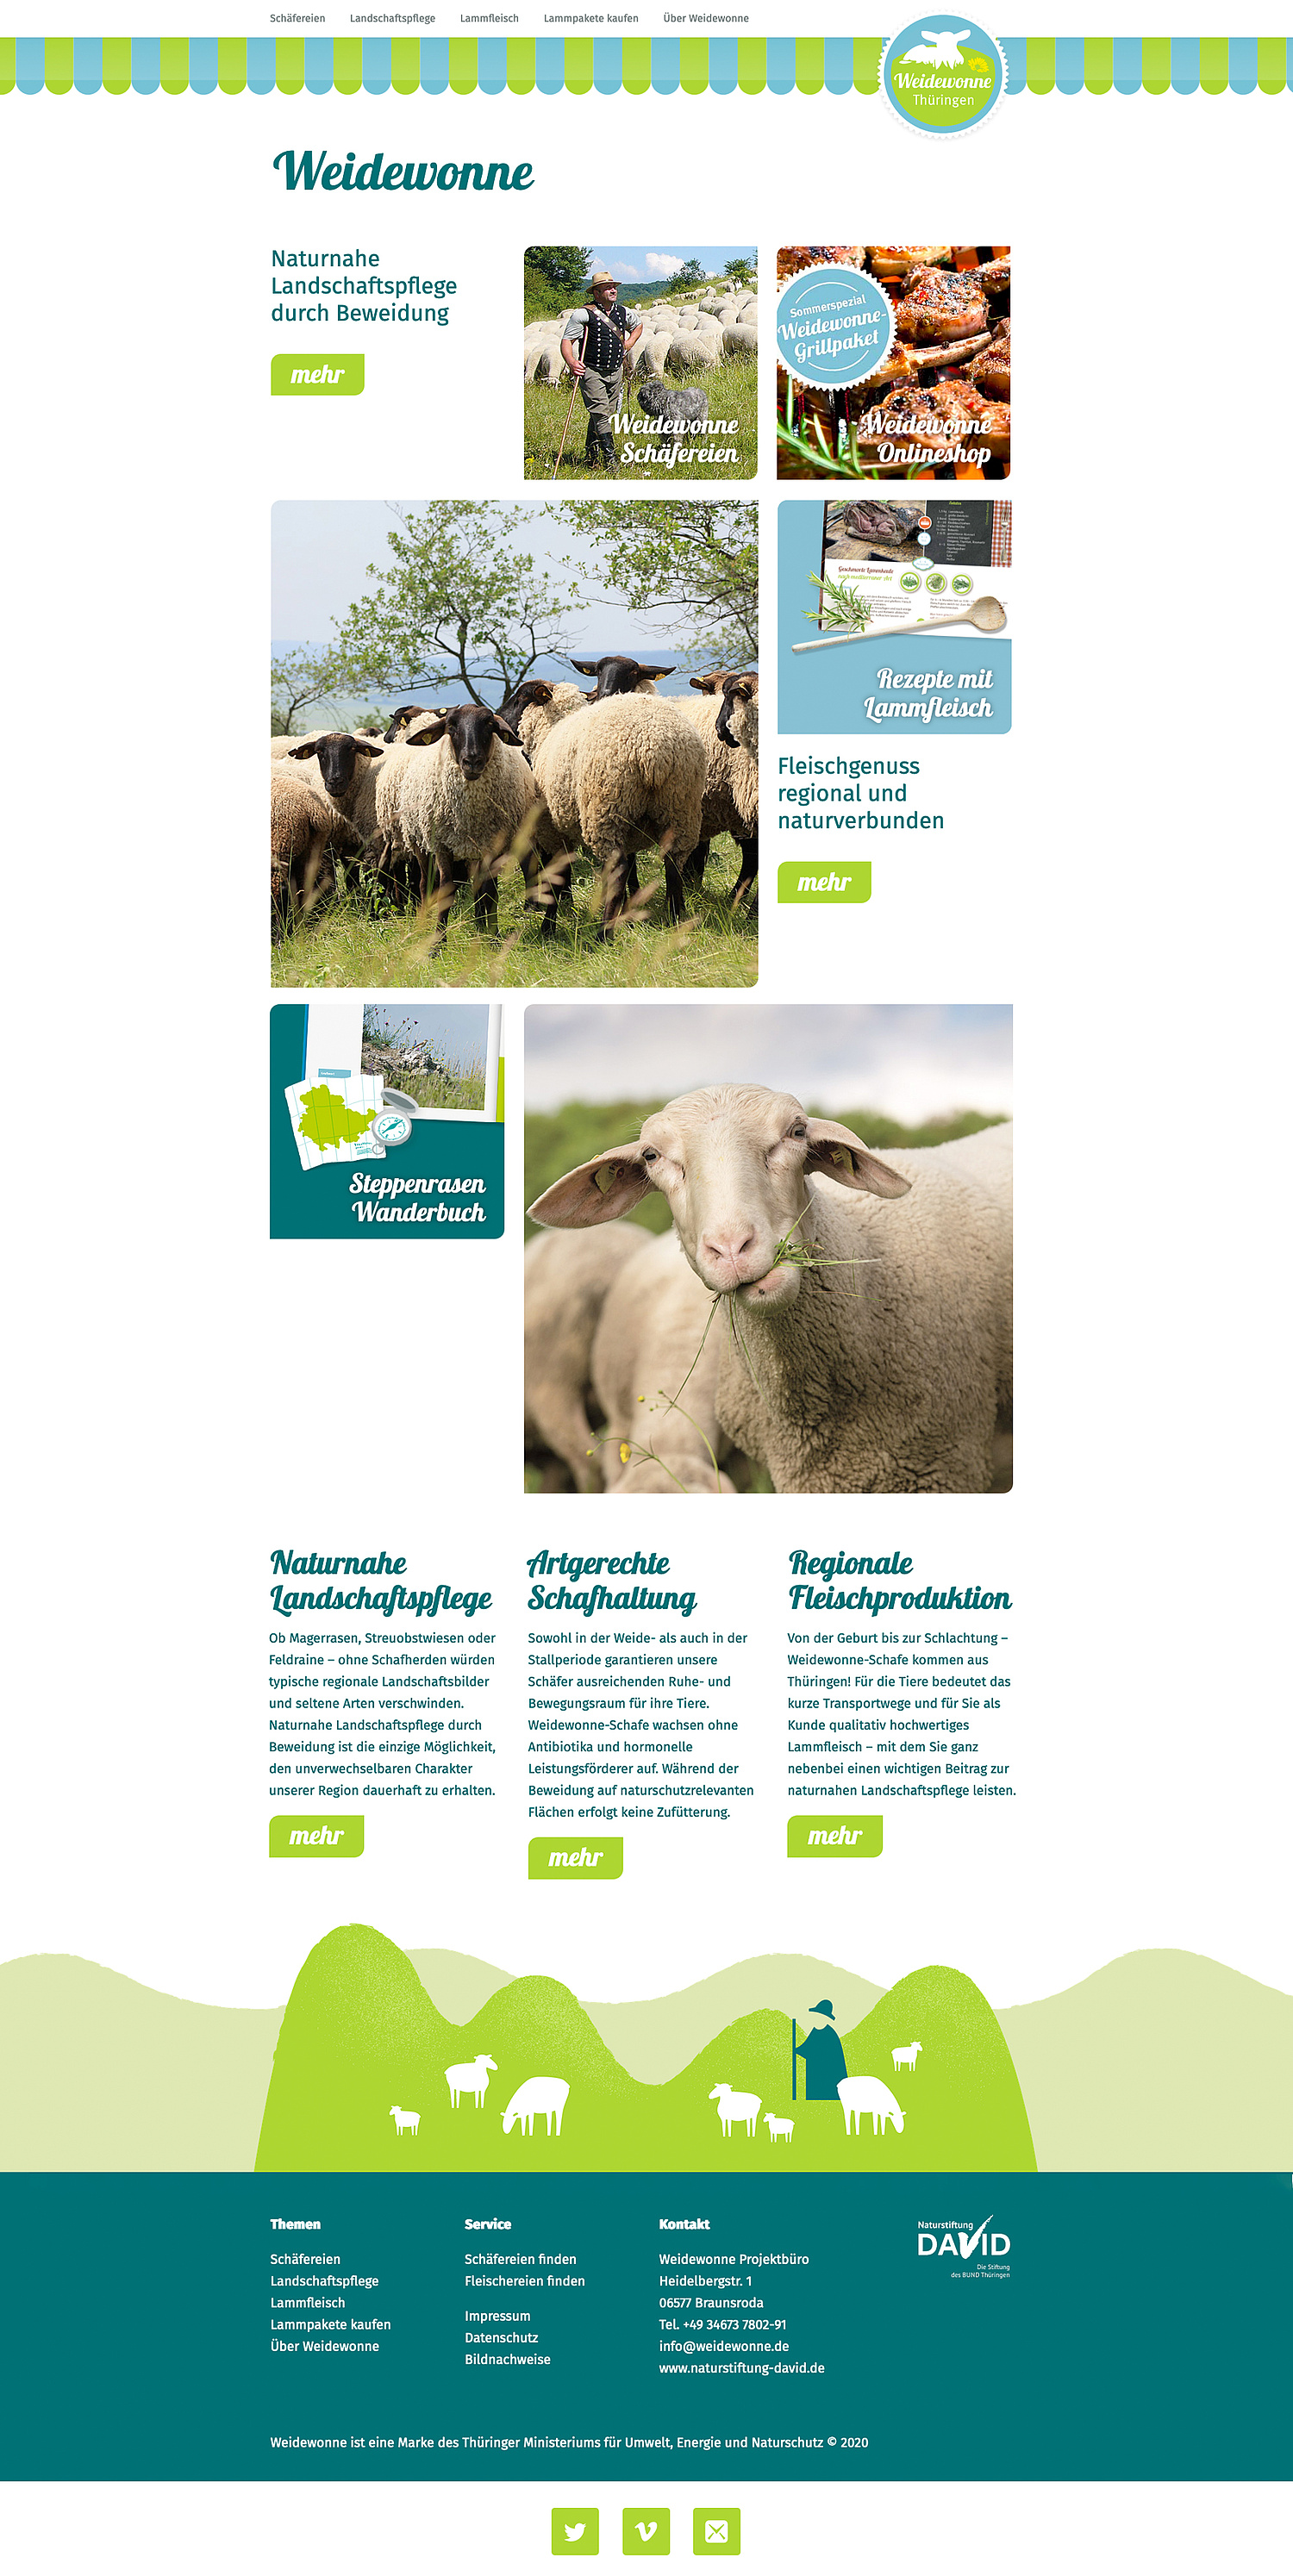 Die Website für Weidewonne, ein Projekt für die naturnahe Beweidung von Naturschutzflächen und die Vermarktung regionalen Lammfleischs, ist in ihrer Struktur an die Seite der Naturstiftung David angelehnt. (© Papenfuss | Atelier)